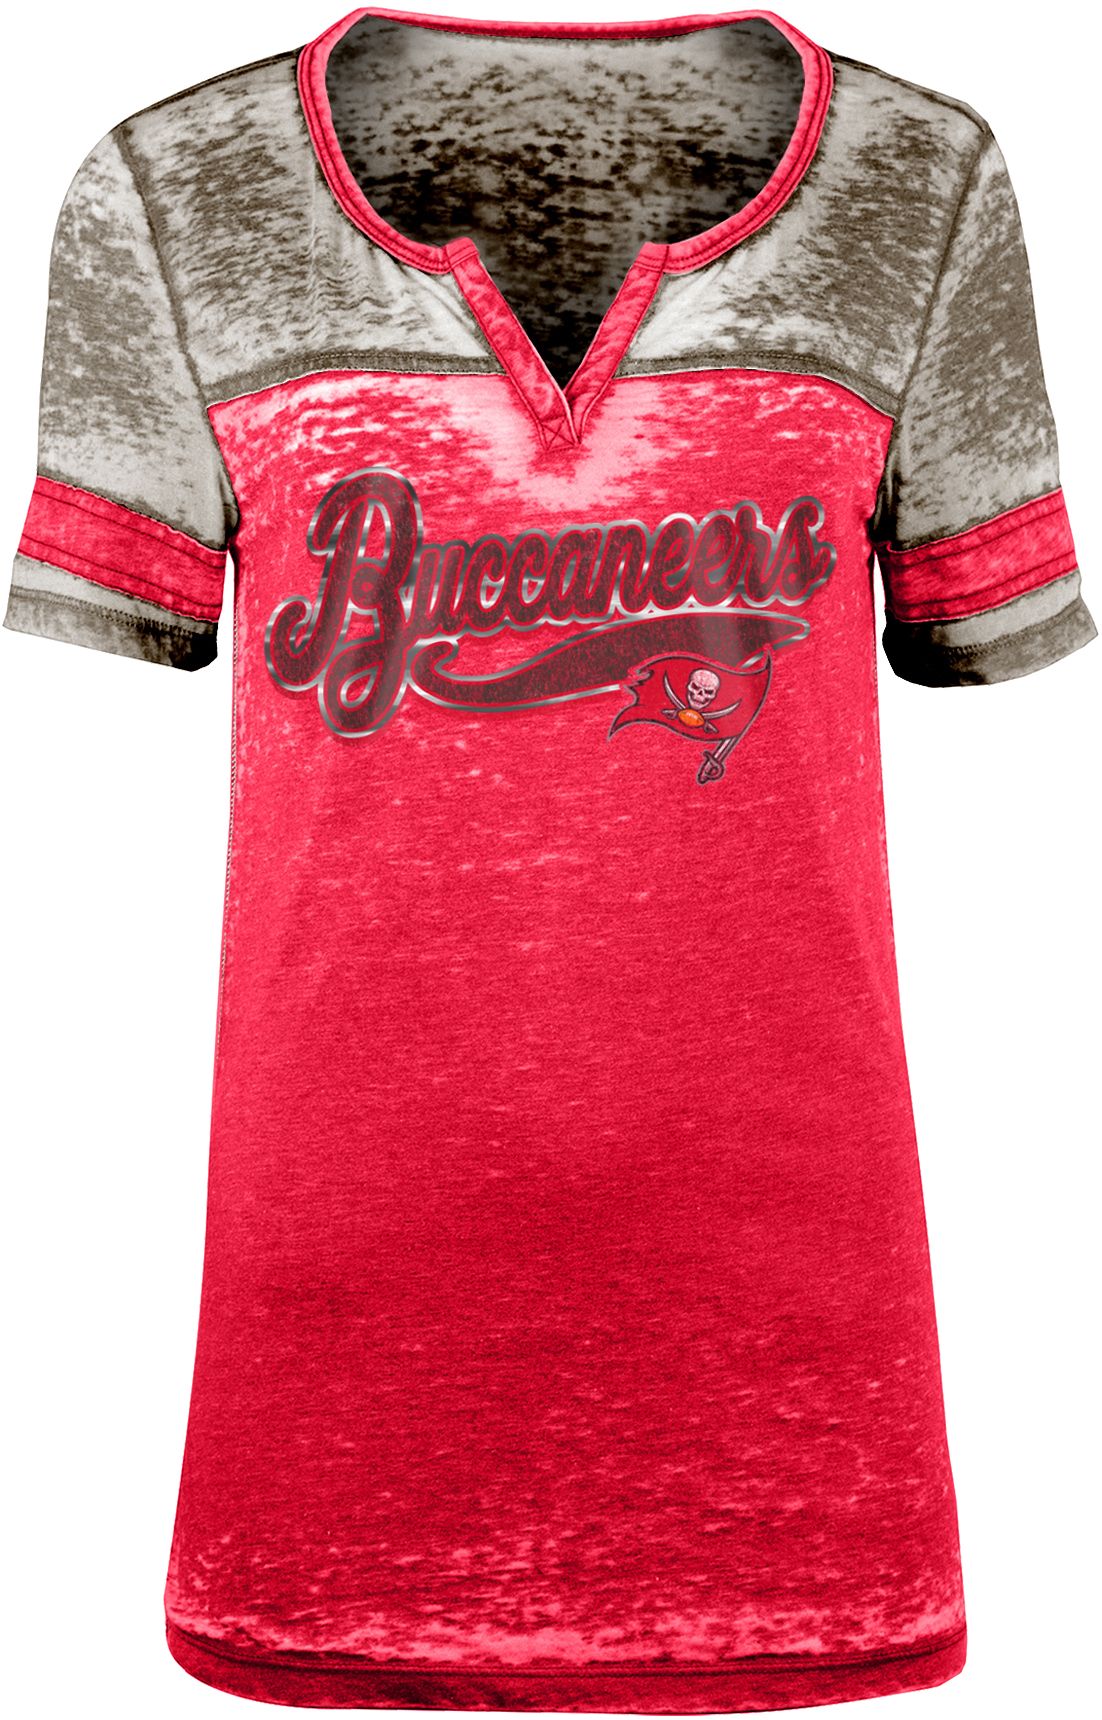 buccaneers women's jersey